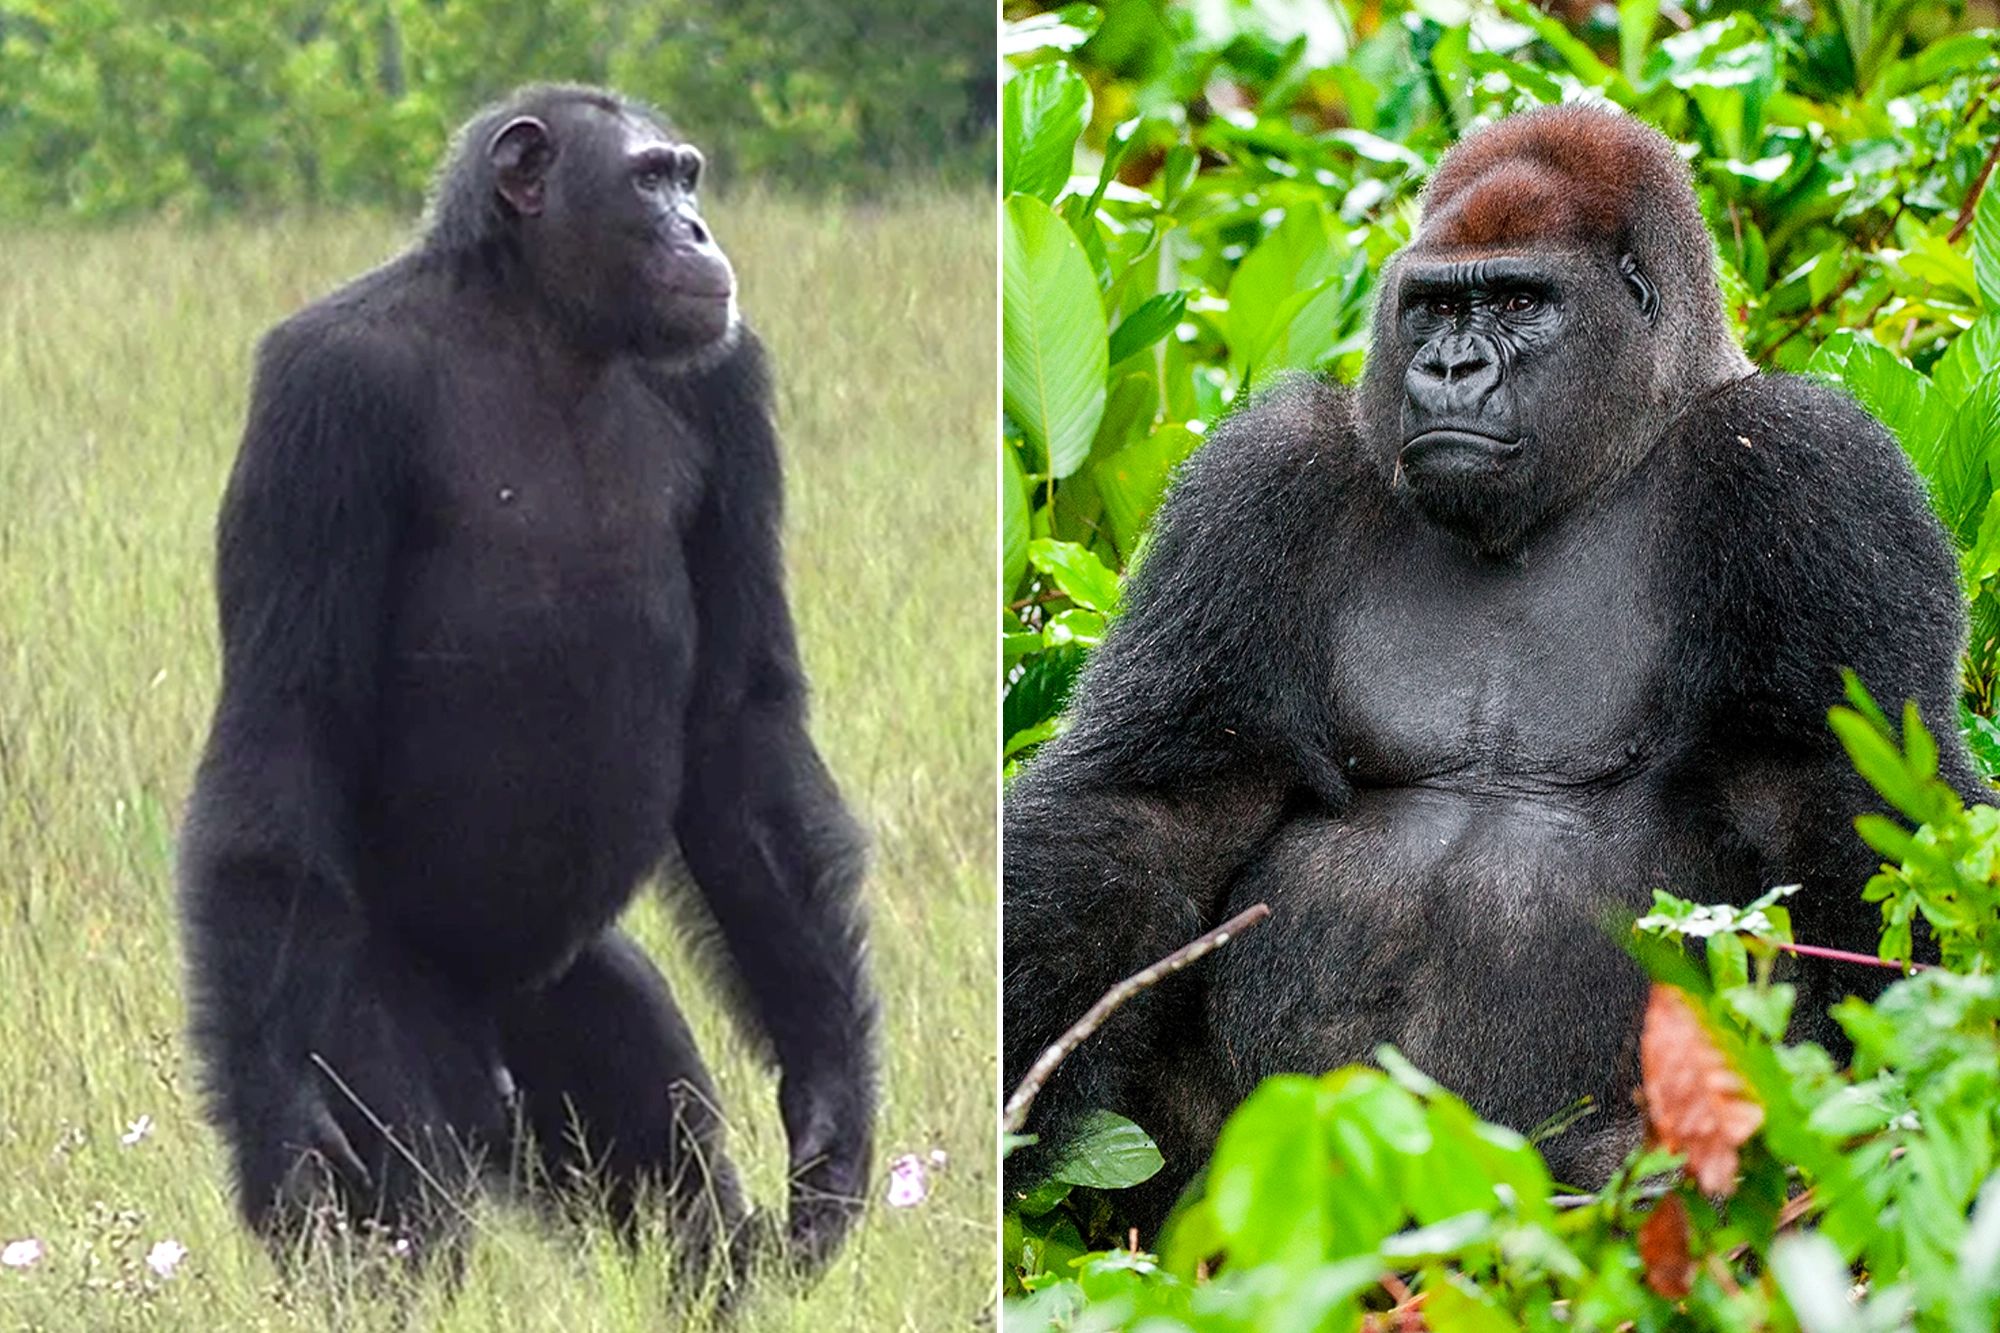 5-Day Gorilla and Chimpanzee Trekking Tour